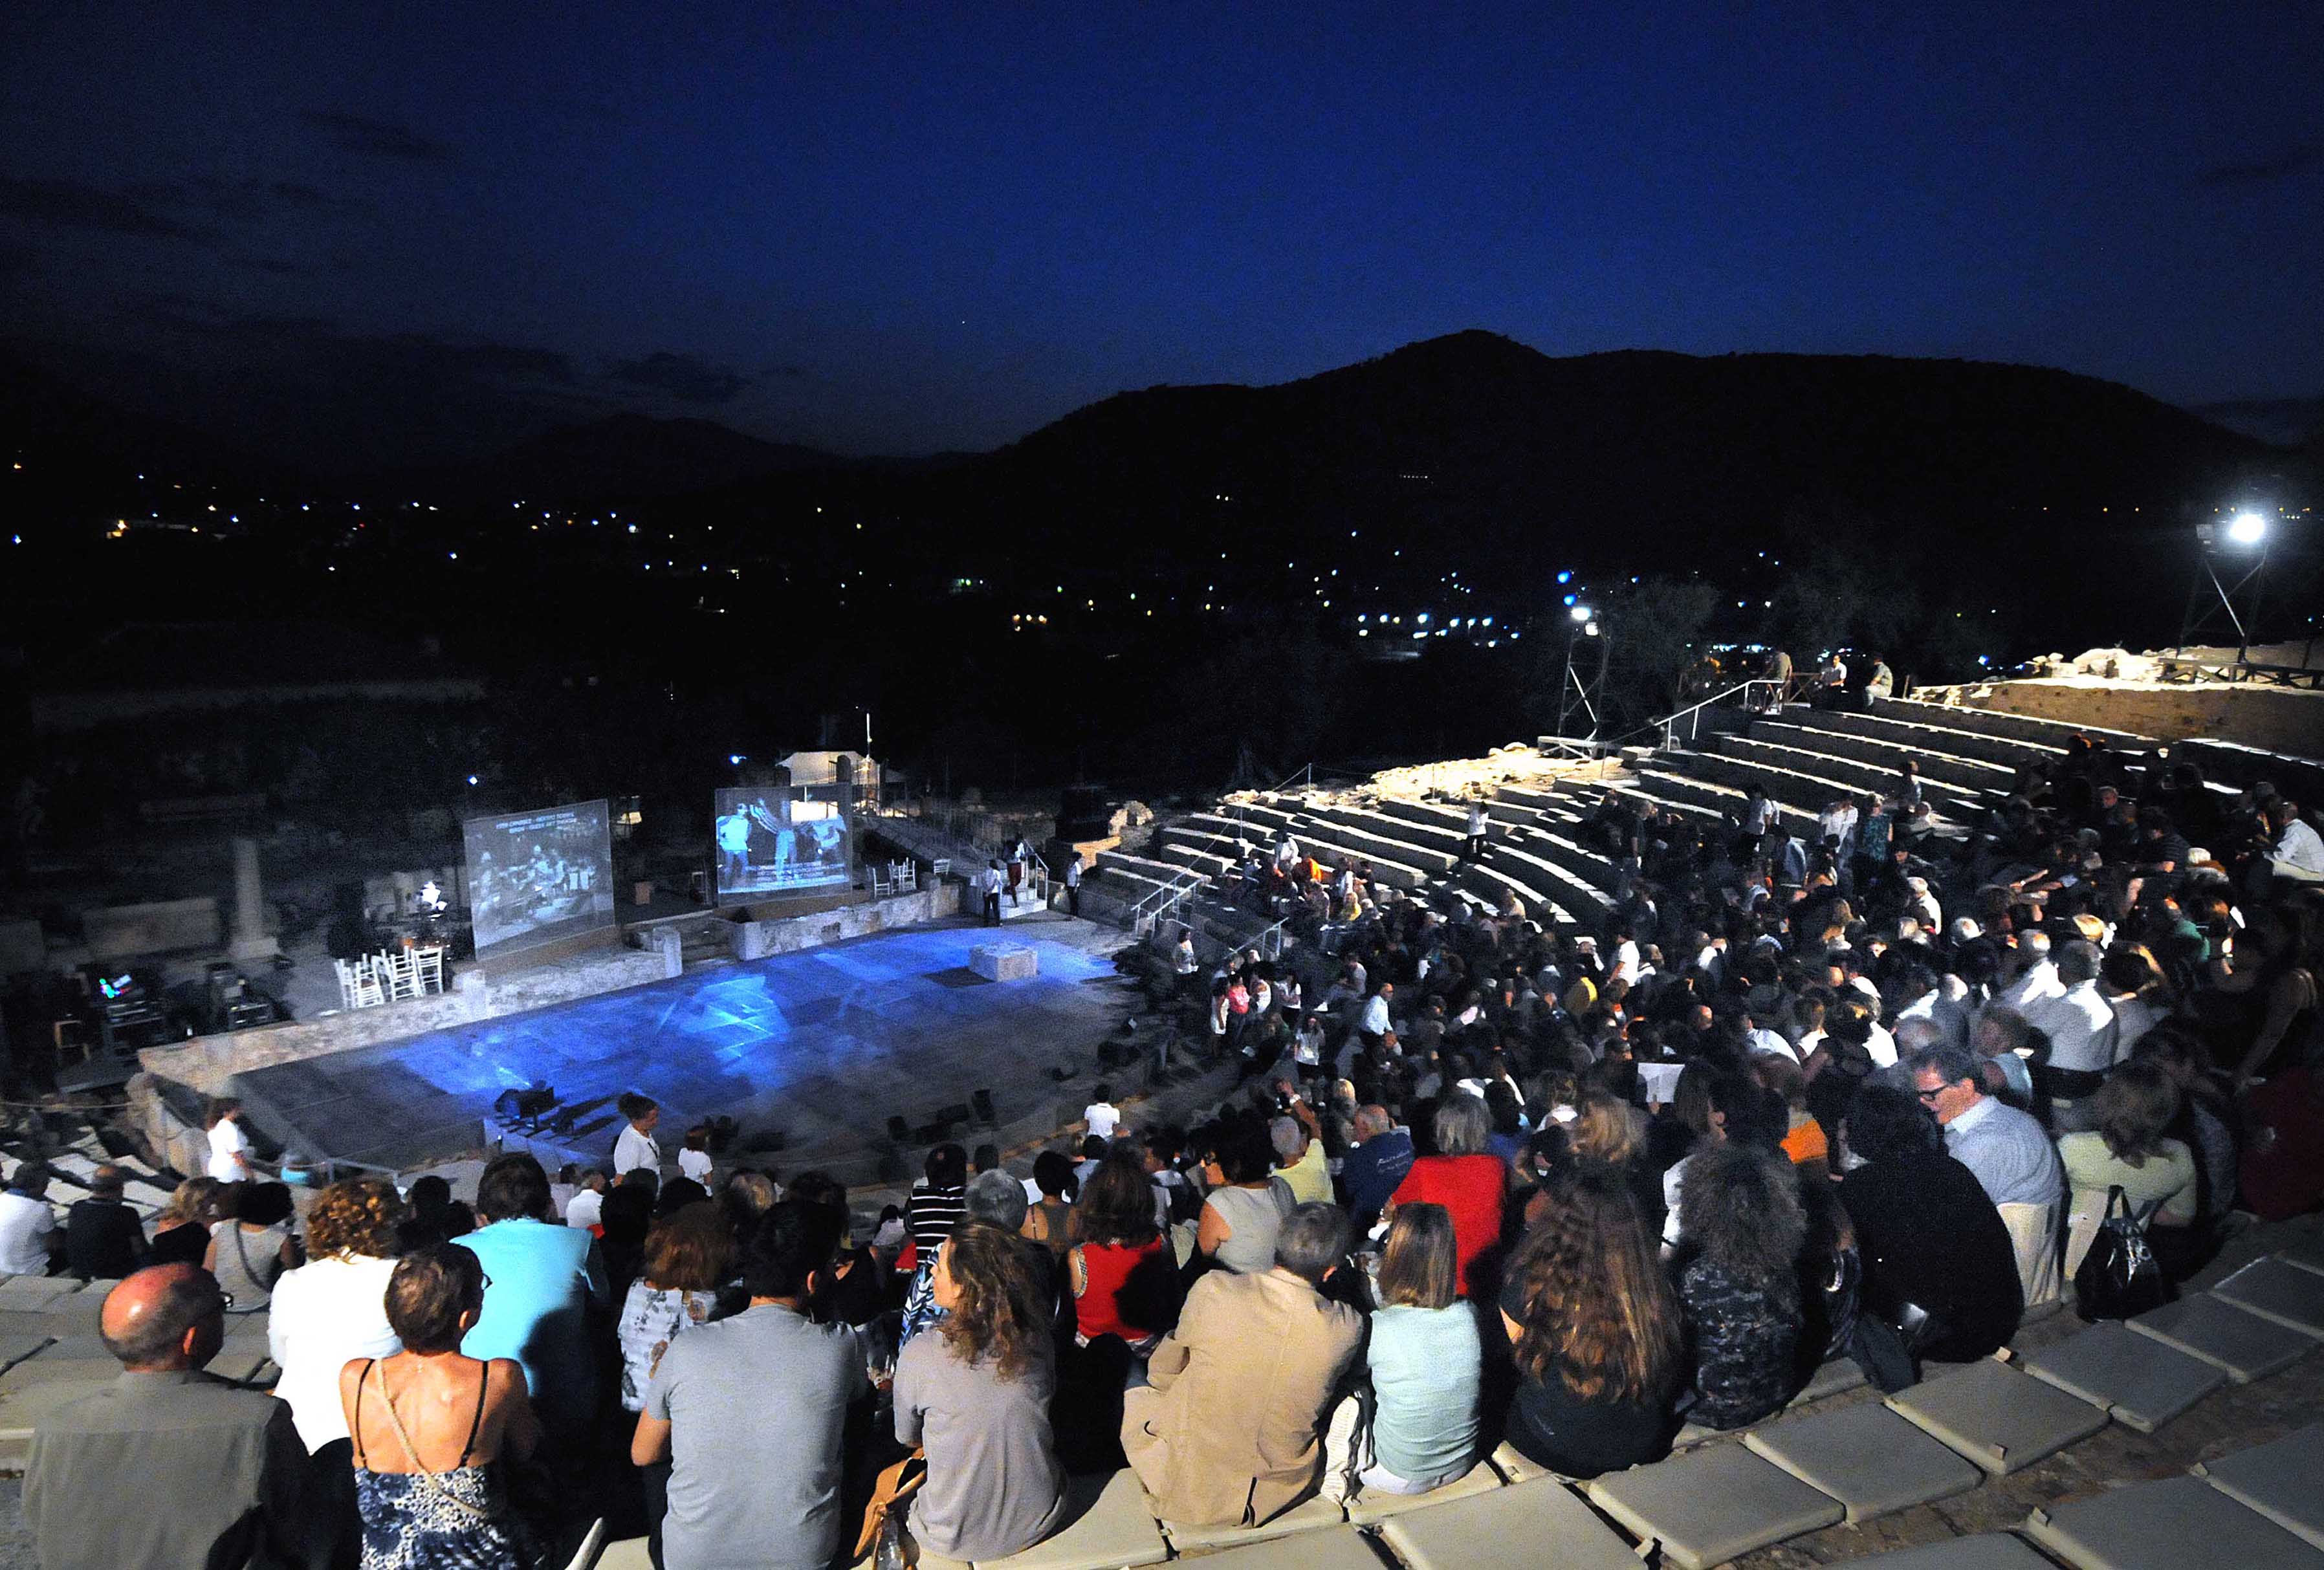 Διεθνές Φεστιβάλ Αρχαίου Ελληνικού Δράματος